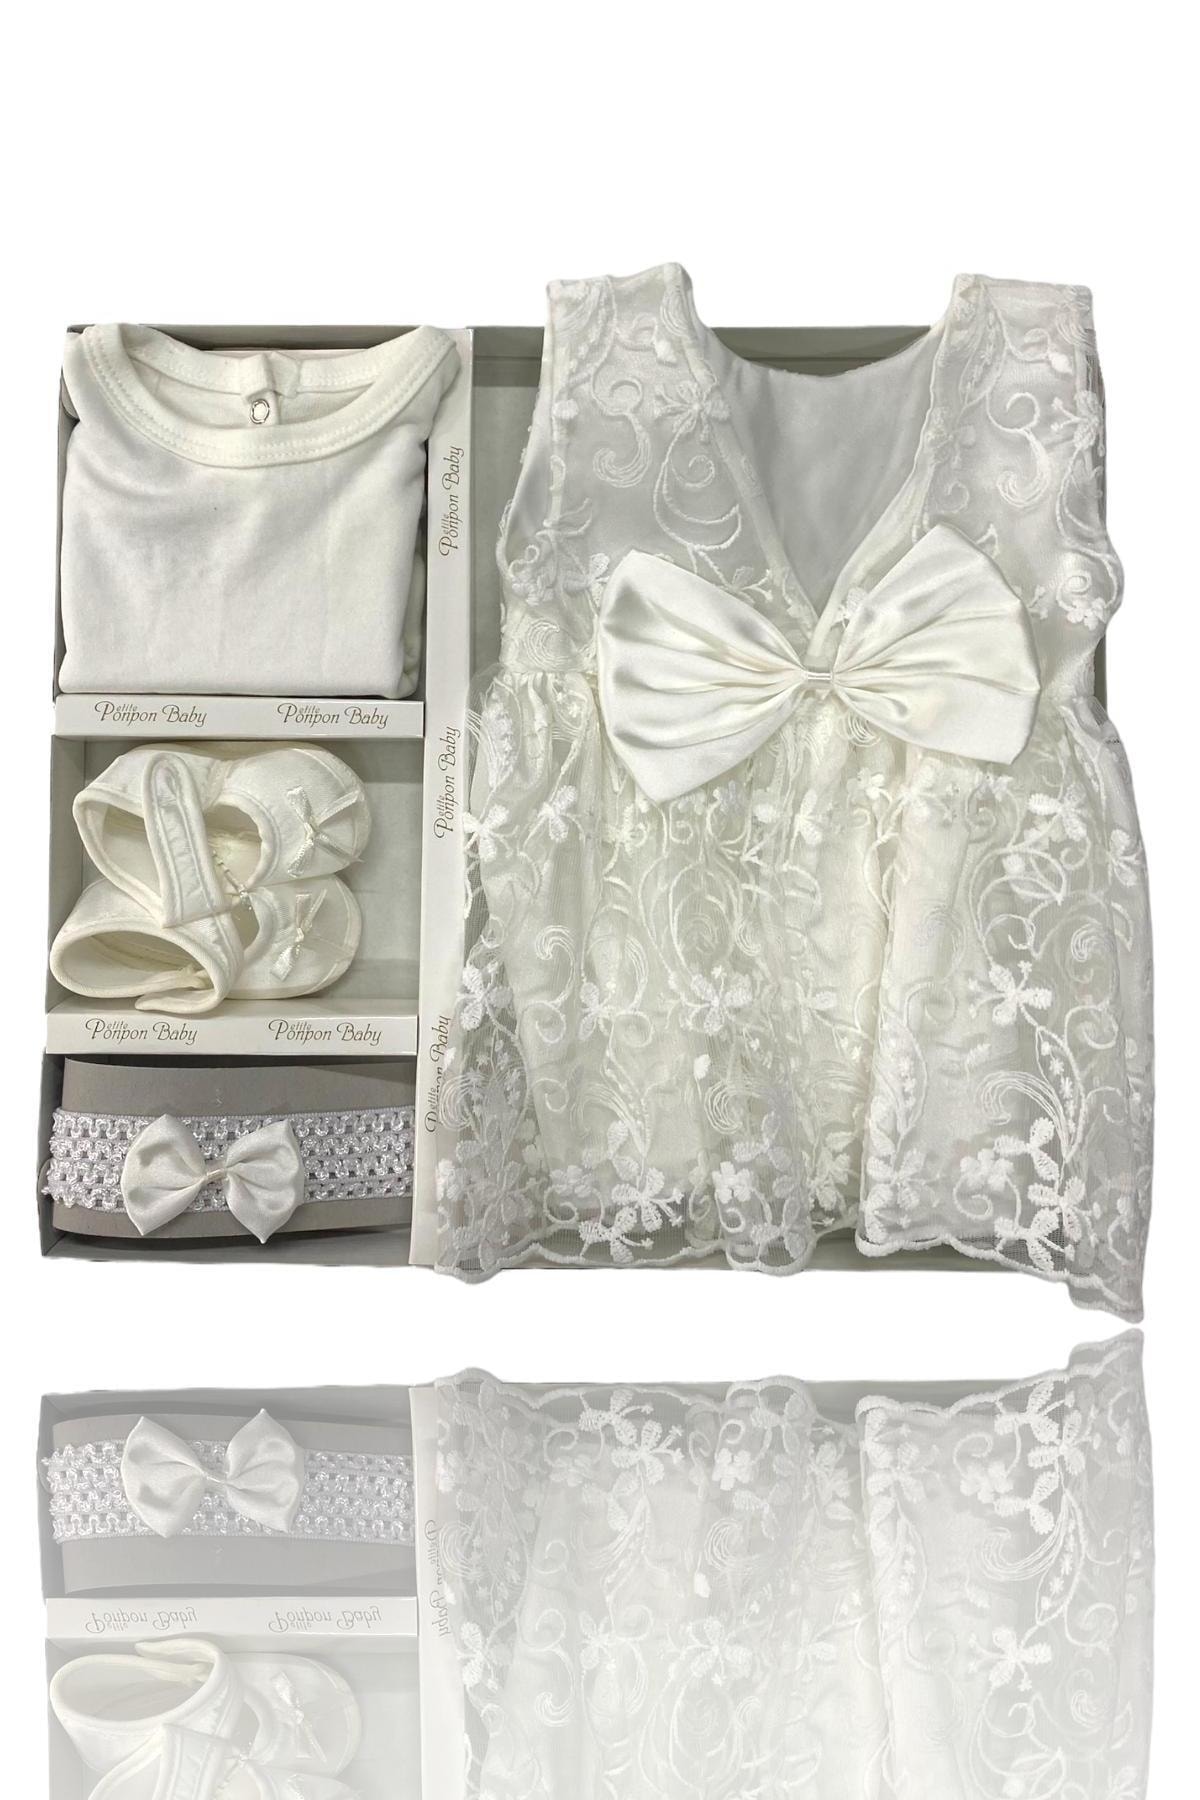 Çantaland Yeni Doğan Kız Bebek Beyaz Elbise Seti, Hastane Çıkışı Set, Hediyelik Elbise